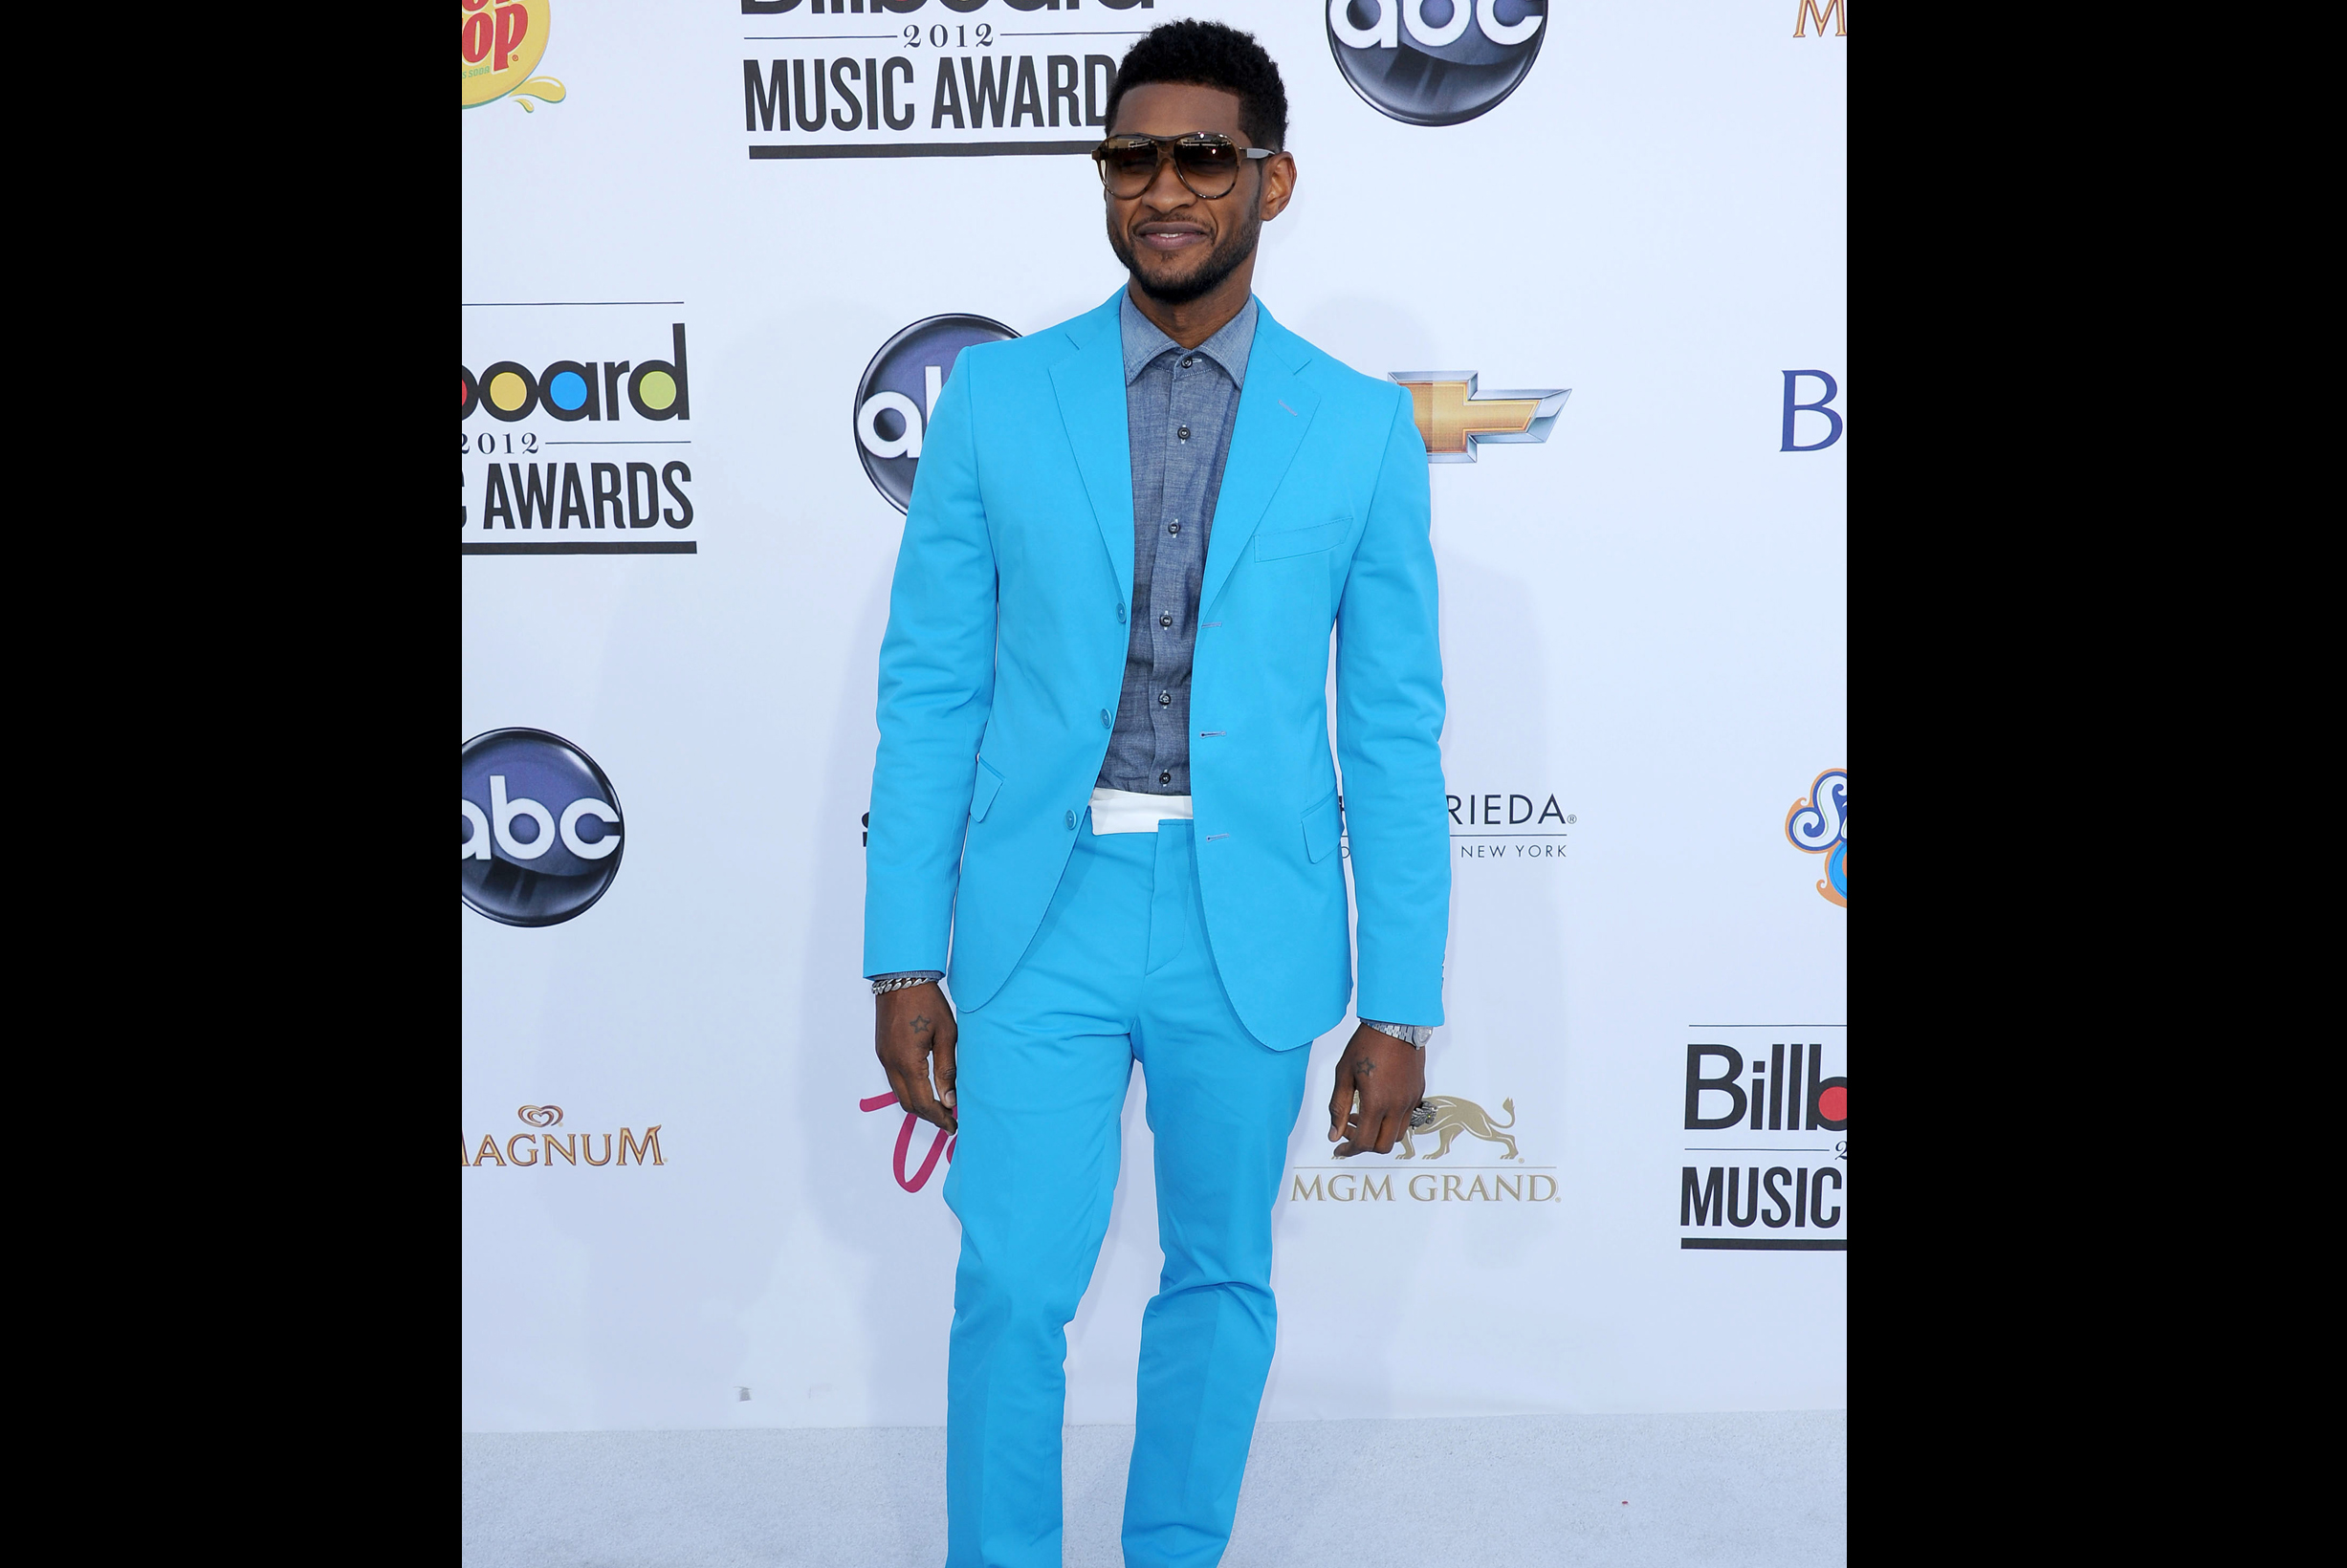 Om man plockar ut de fyra första bokstäverna från Ushers namn så är det en bra förklaring på denna poolifierade outfit.